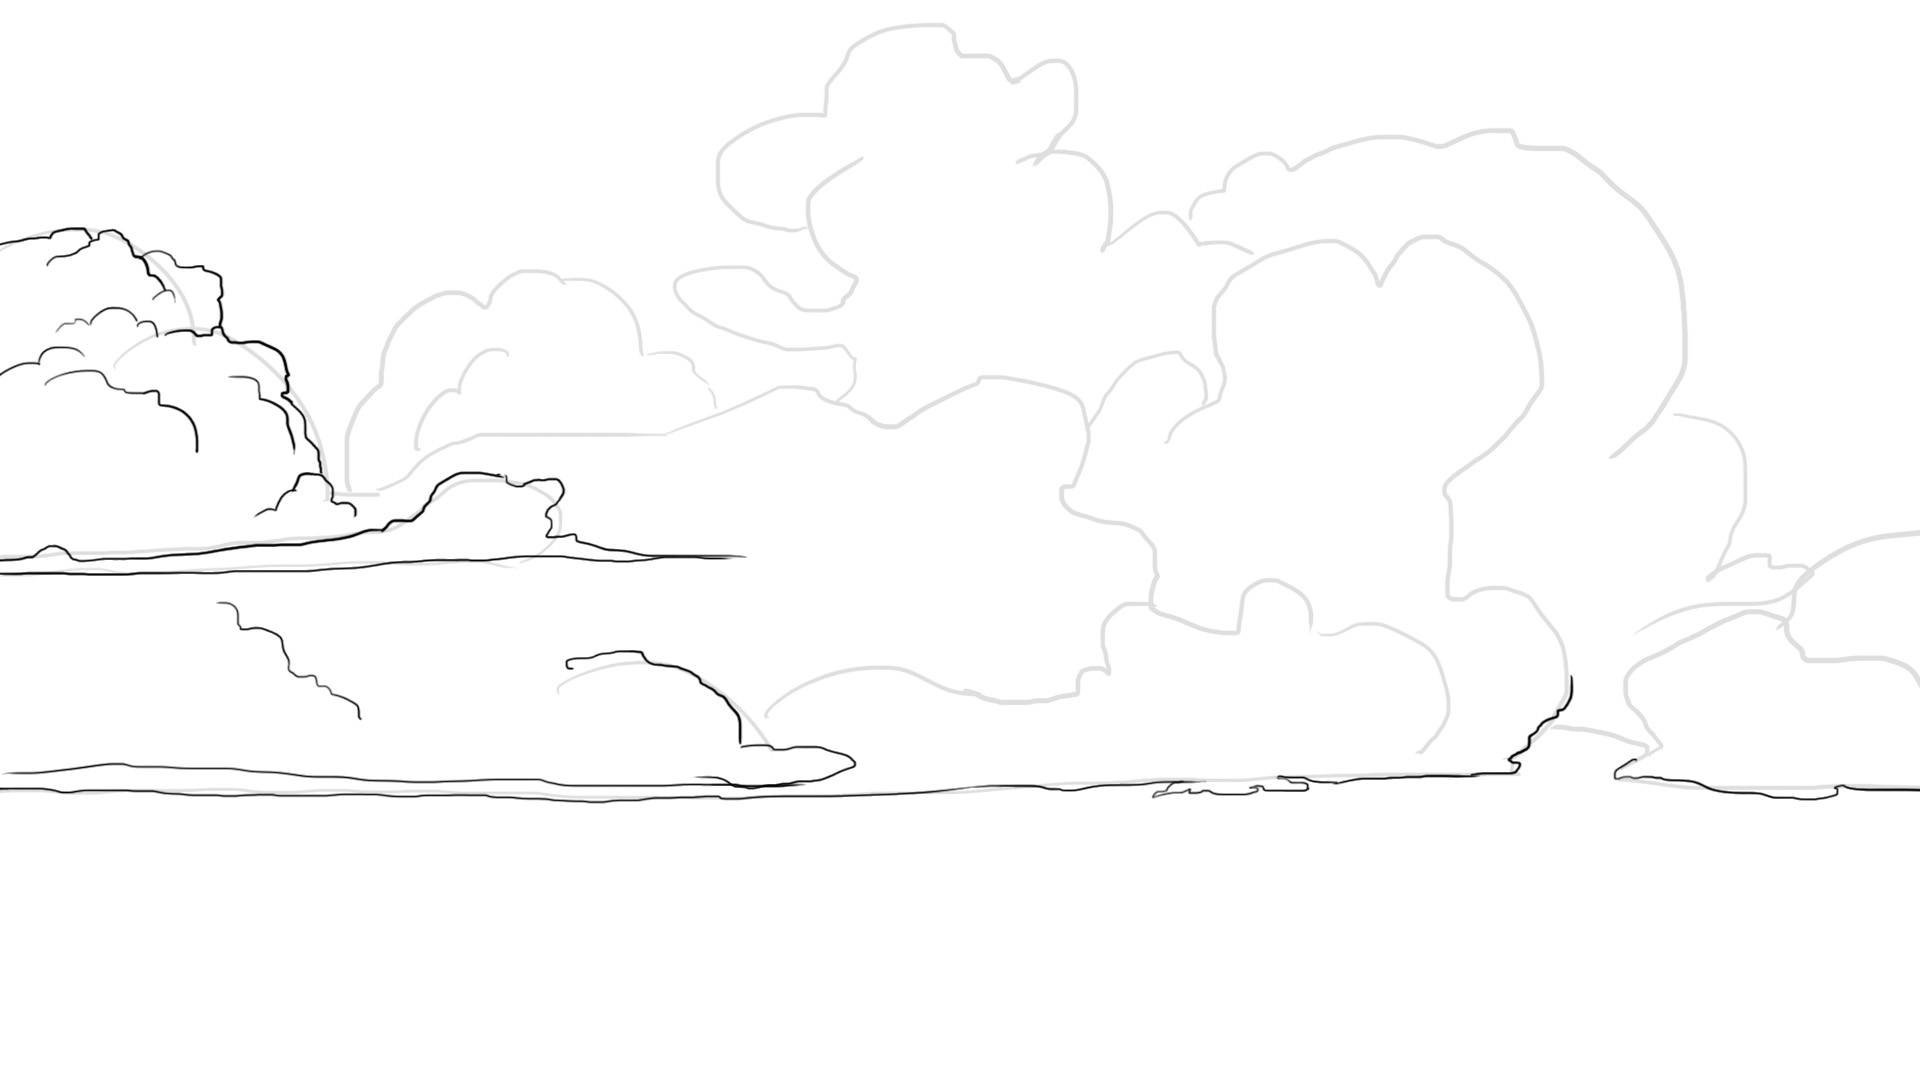 Détails du dessin de nuage dense 2